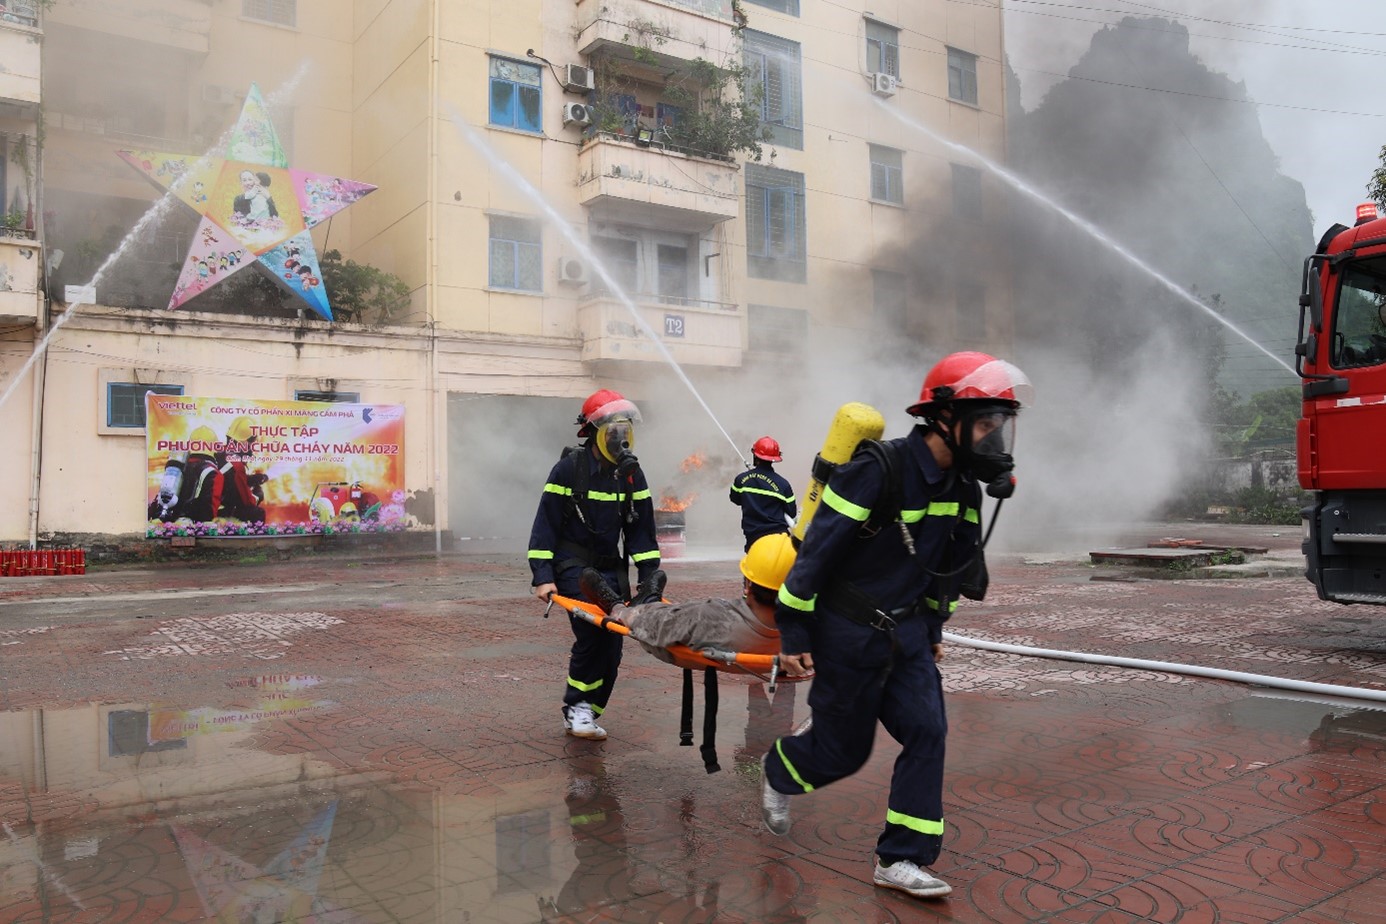 Xi măng Cẩm Phả tổ chức tuyên truyền, thực tập phương án chữa cháy năm 2022